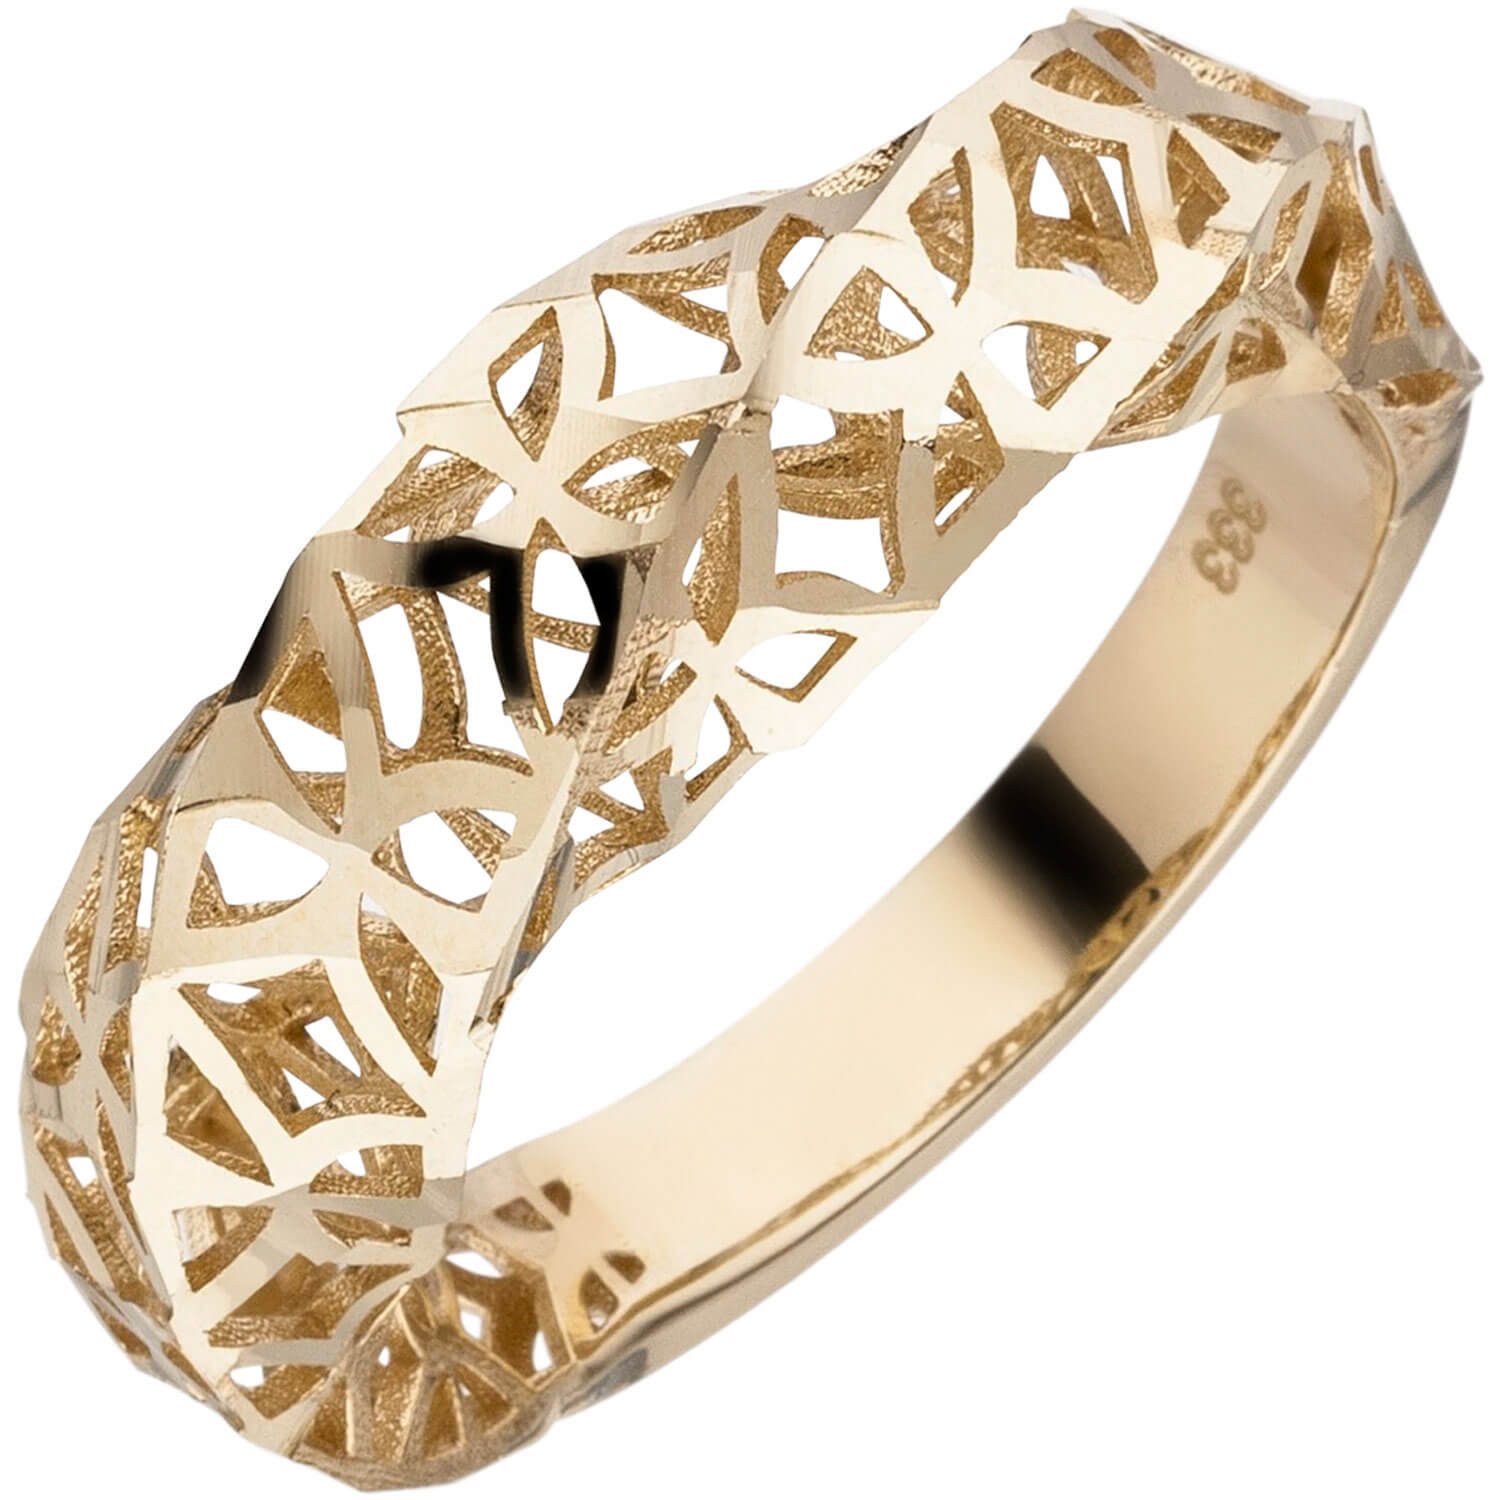 Schmuck Krone Goldring Ring aus 333 Gelbgold, gedreht, mit Muster, Gold 333